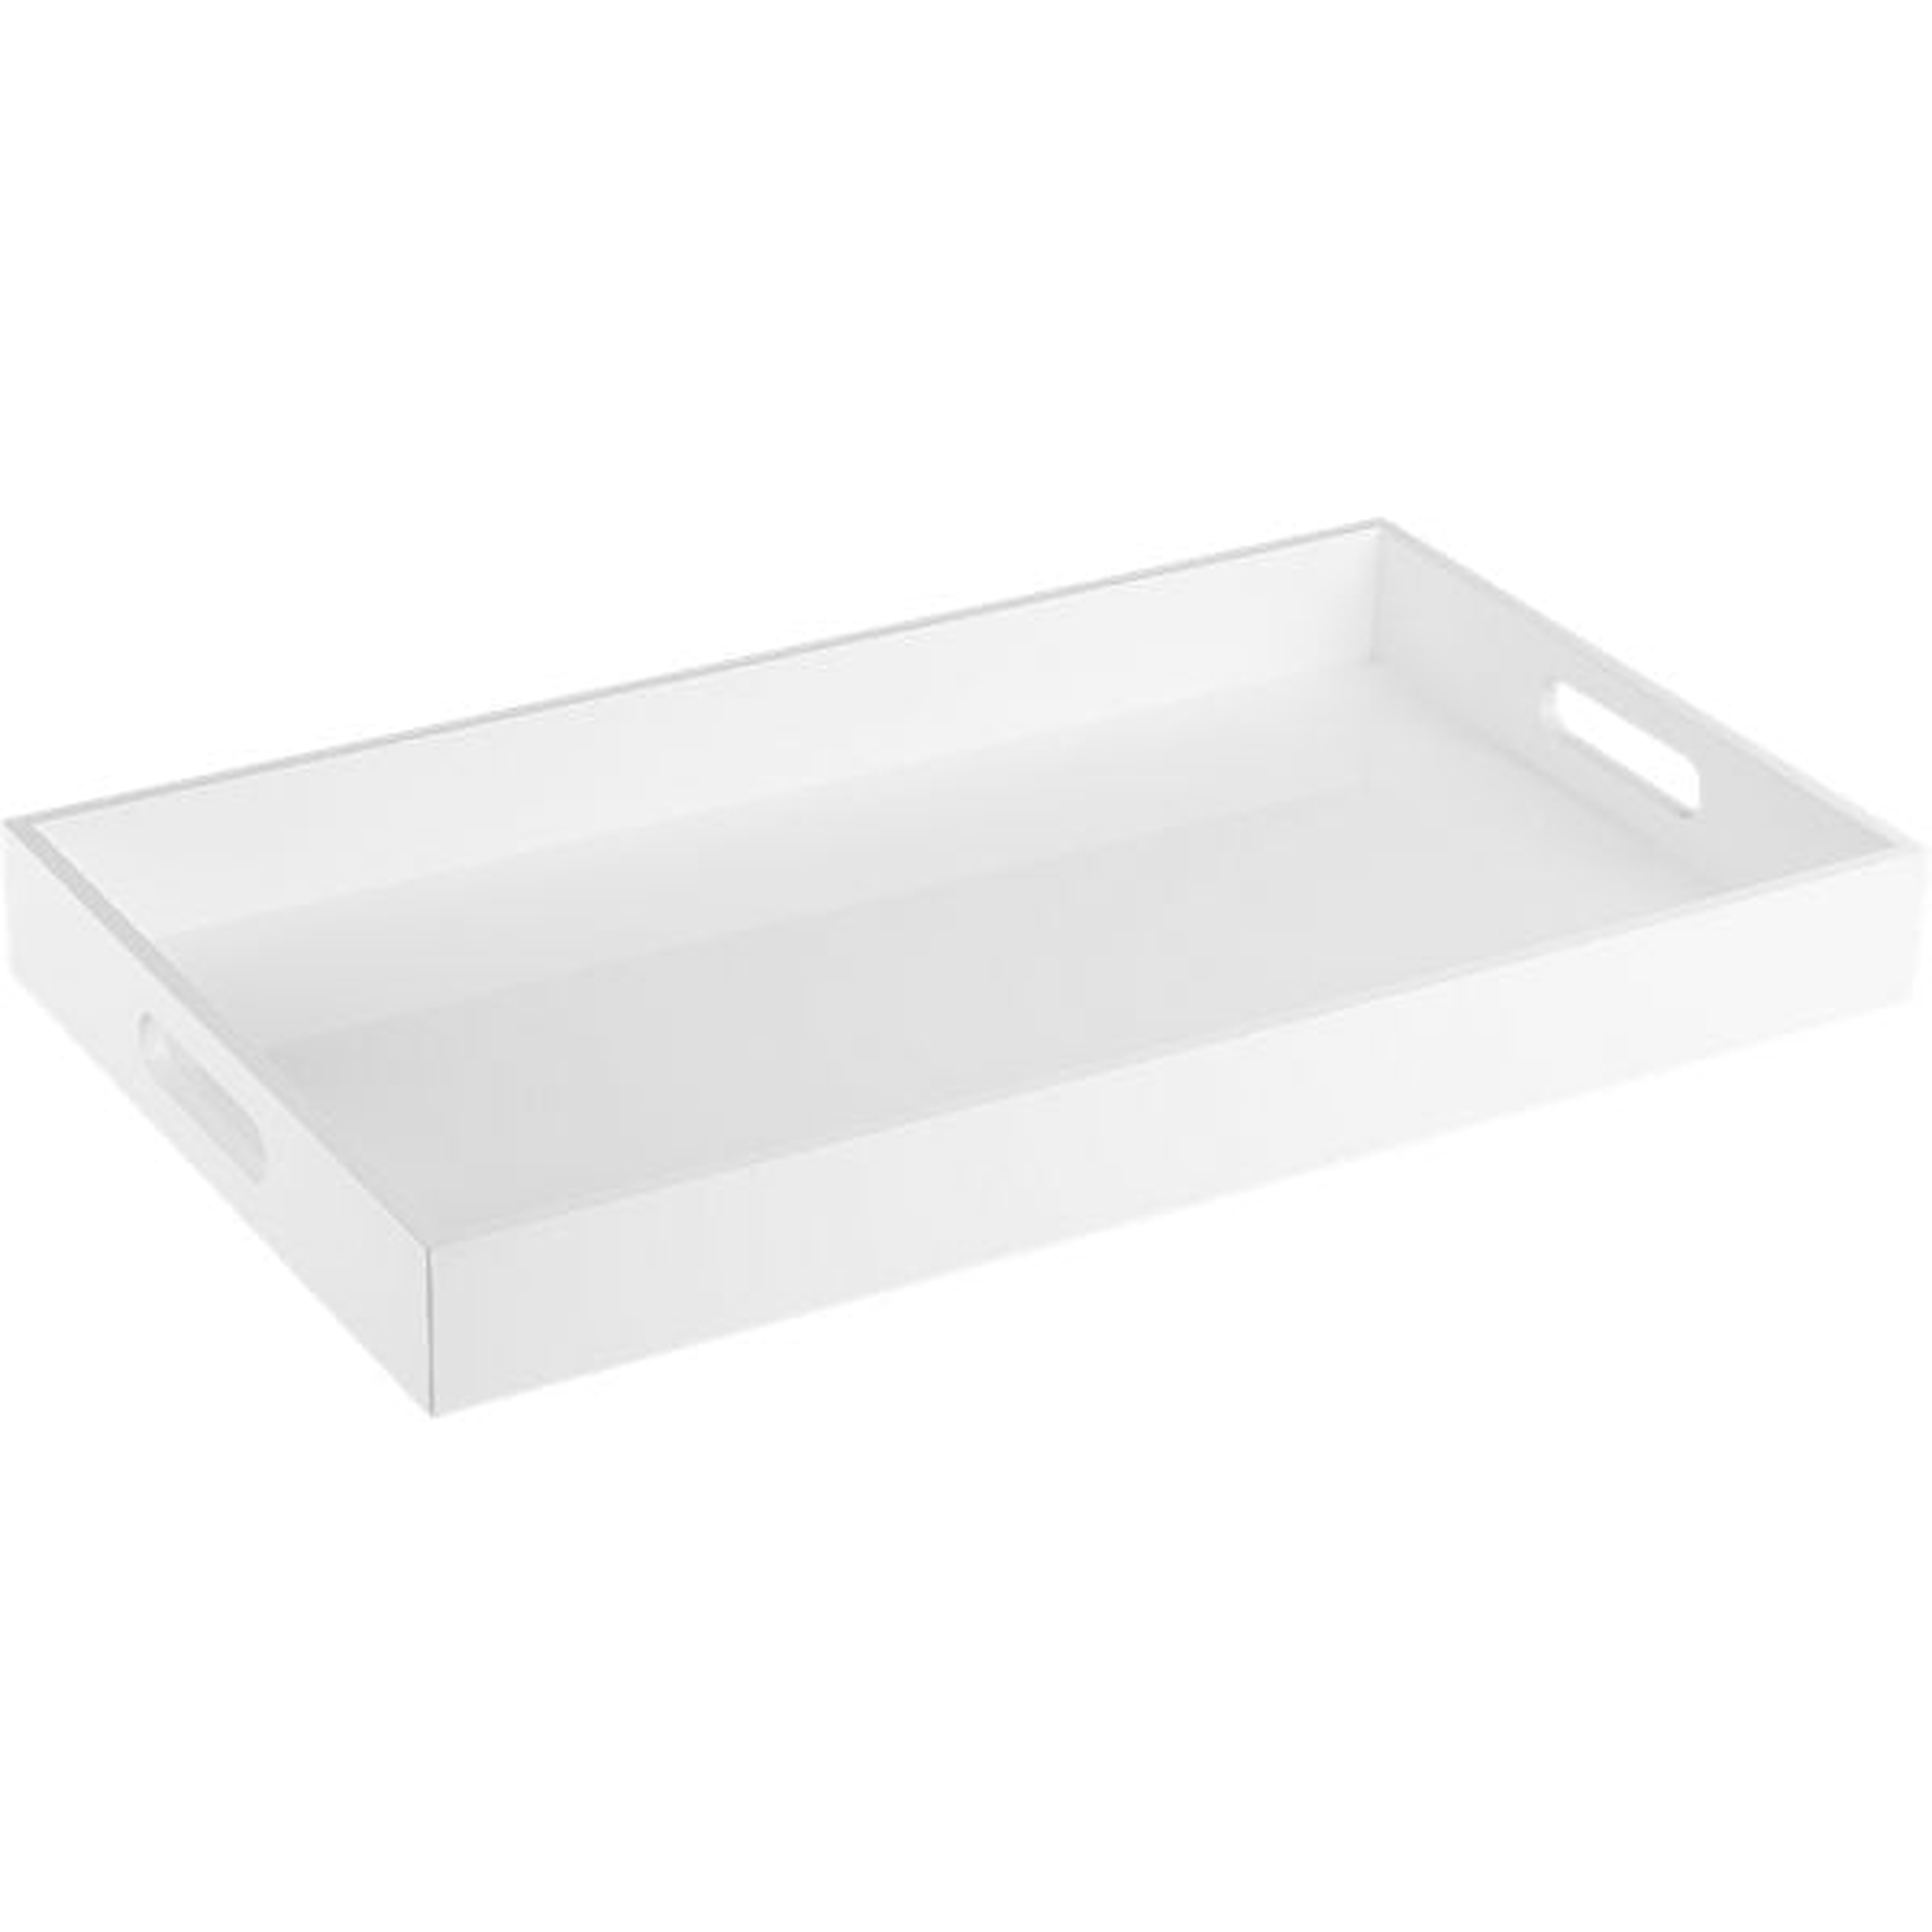 Hi-gloss rectangular white tray - CB2